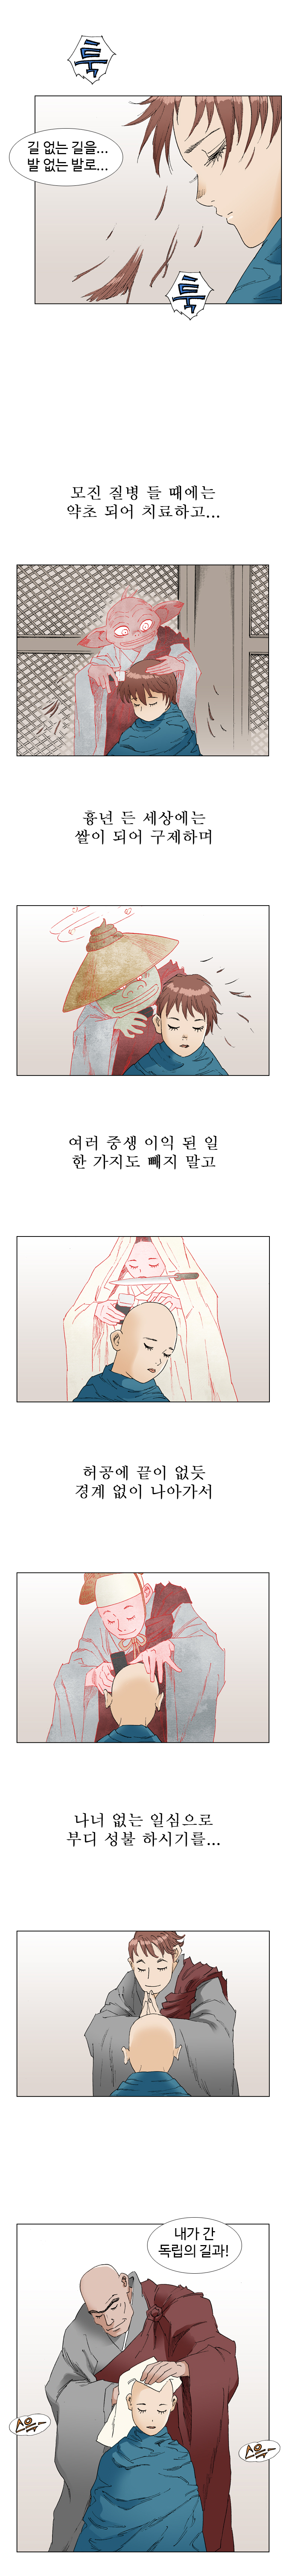 웹툰 백초월 5화-21